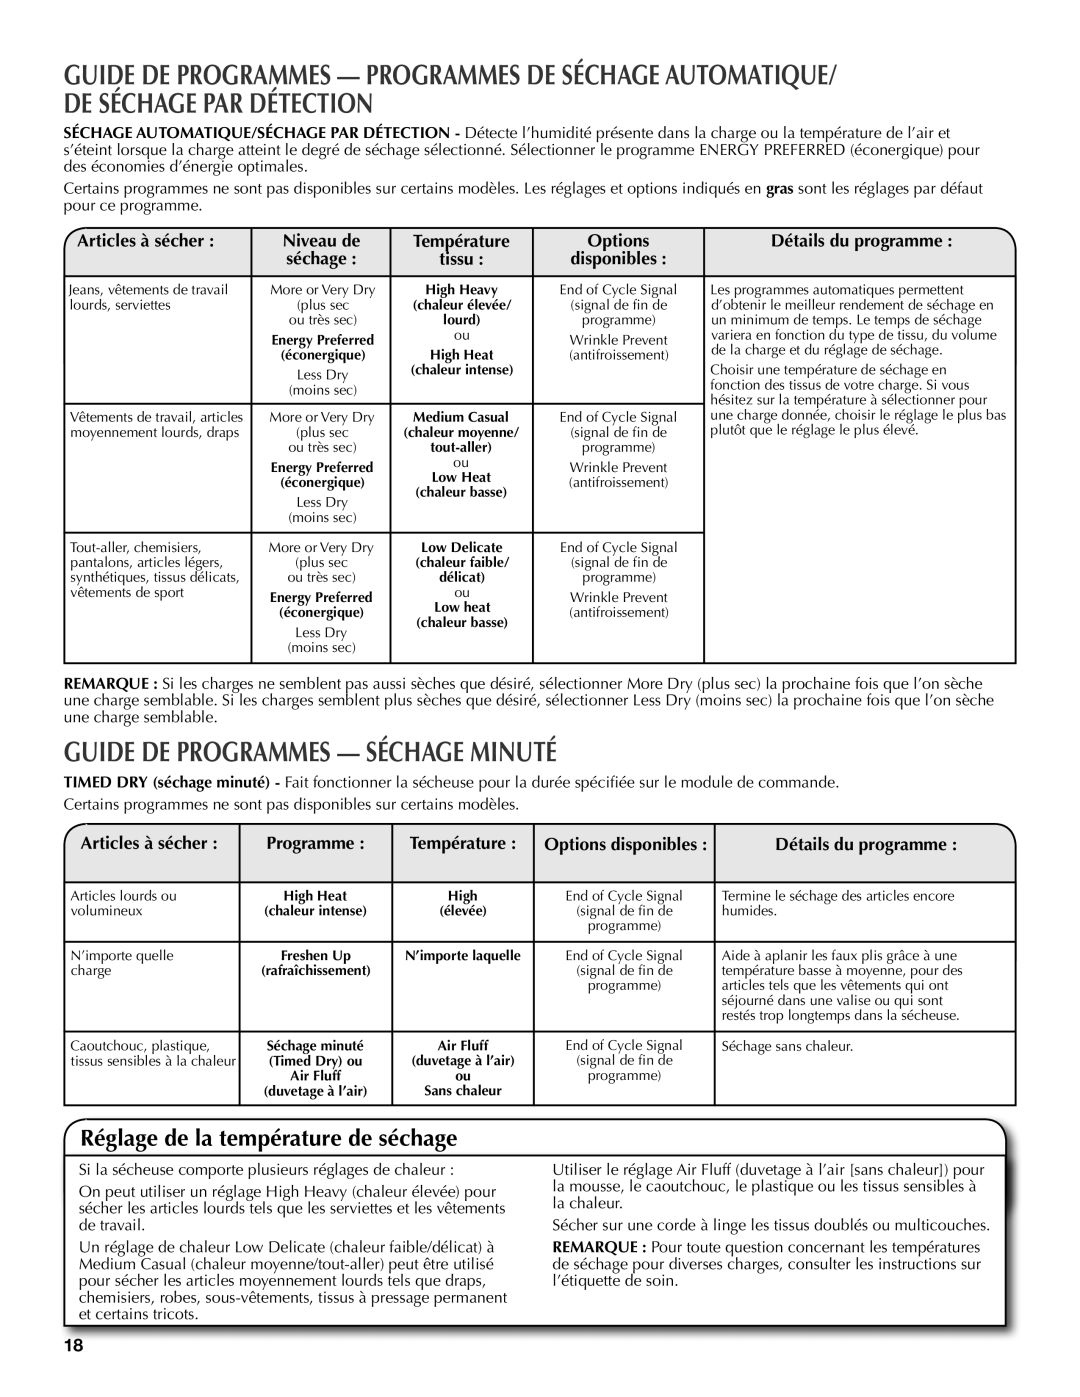 Maytag W10097007A - SP Guide De Programmes - Séchage Minuté, Réglage de la température de séchage, Articles à sécher 